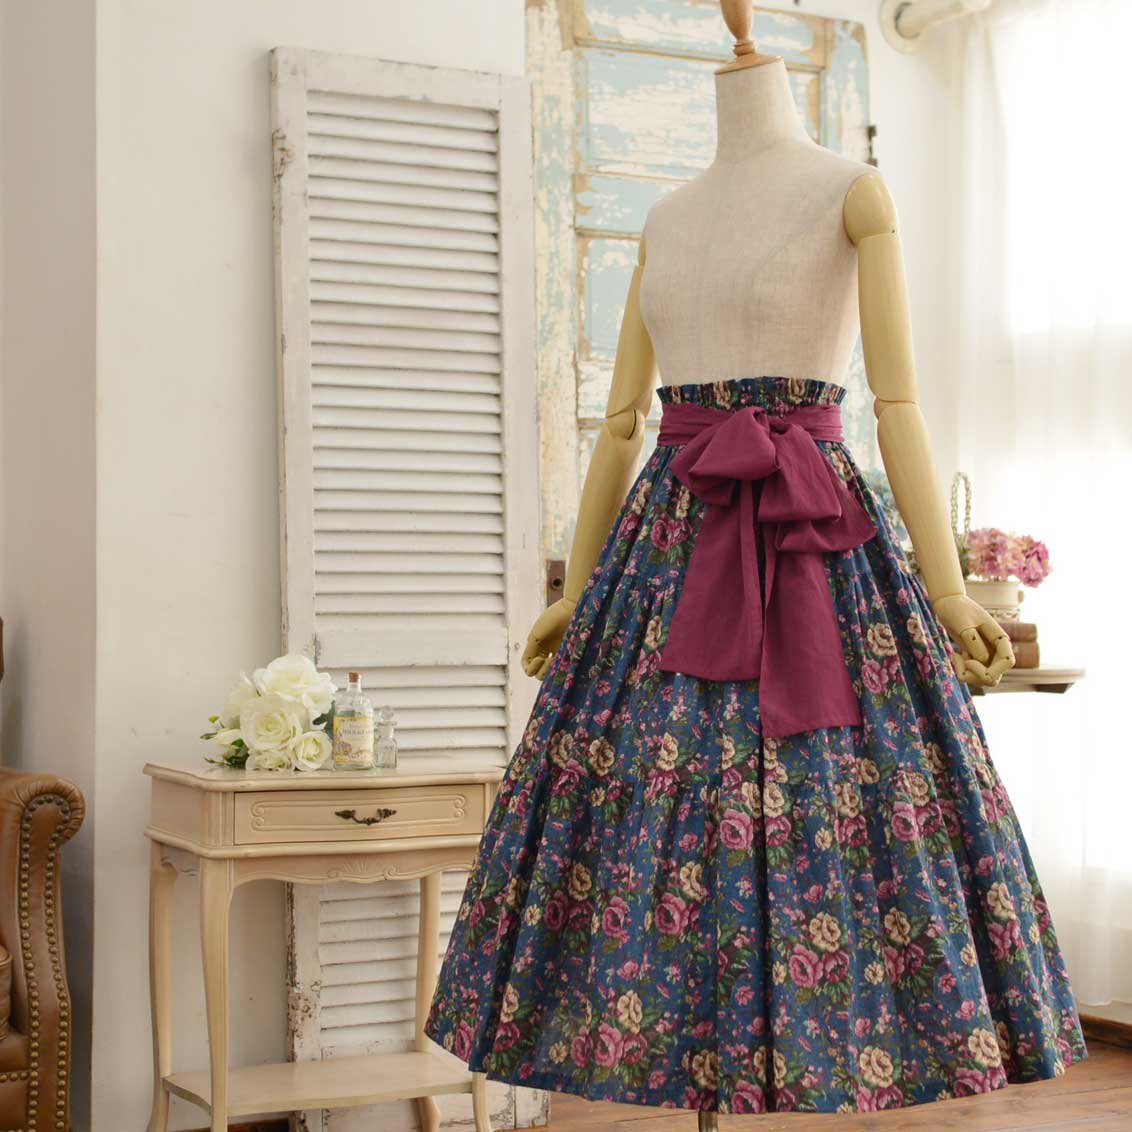 ROSA BIANCA online shopu003d プチポワンプリントのティアードスカート u003d